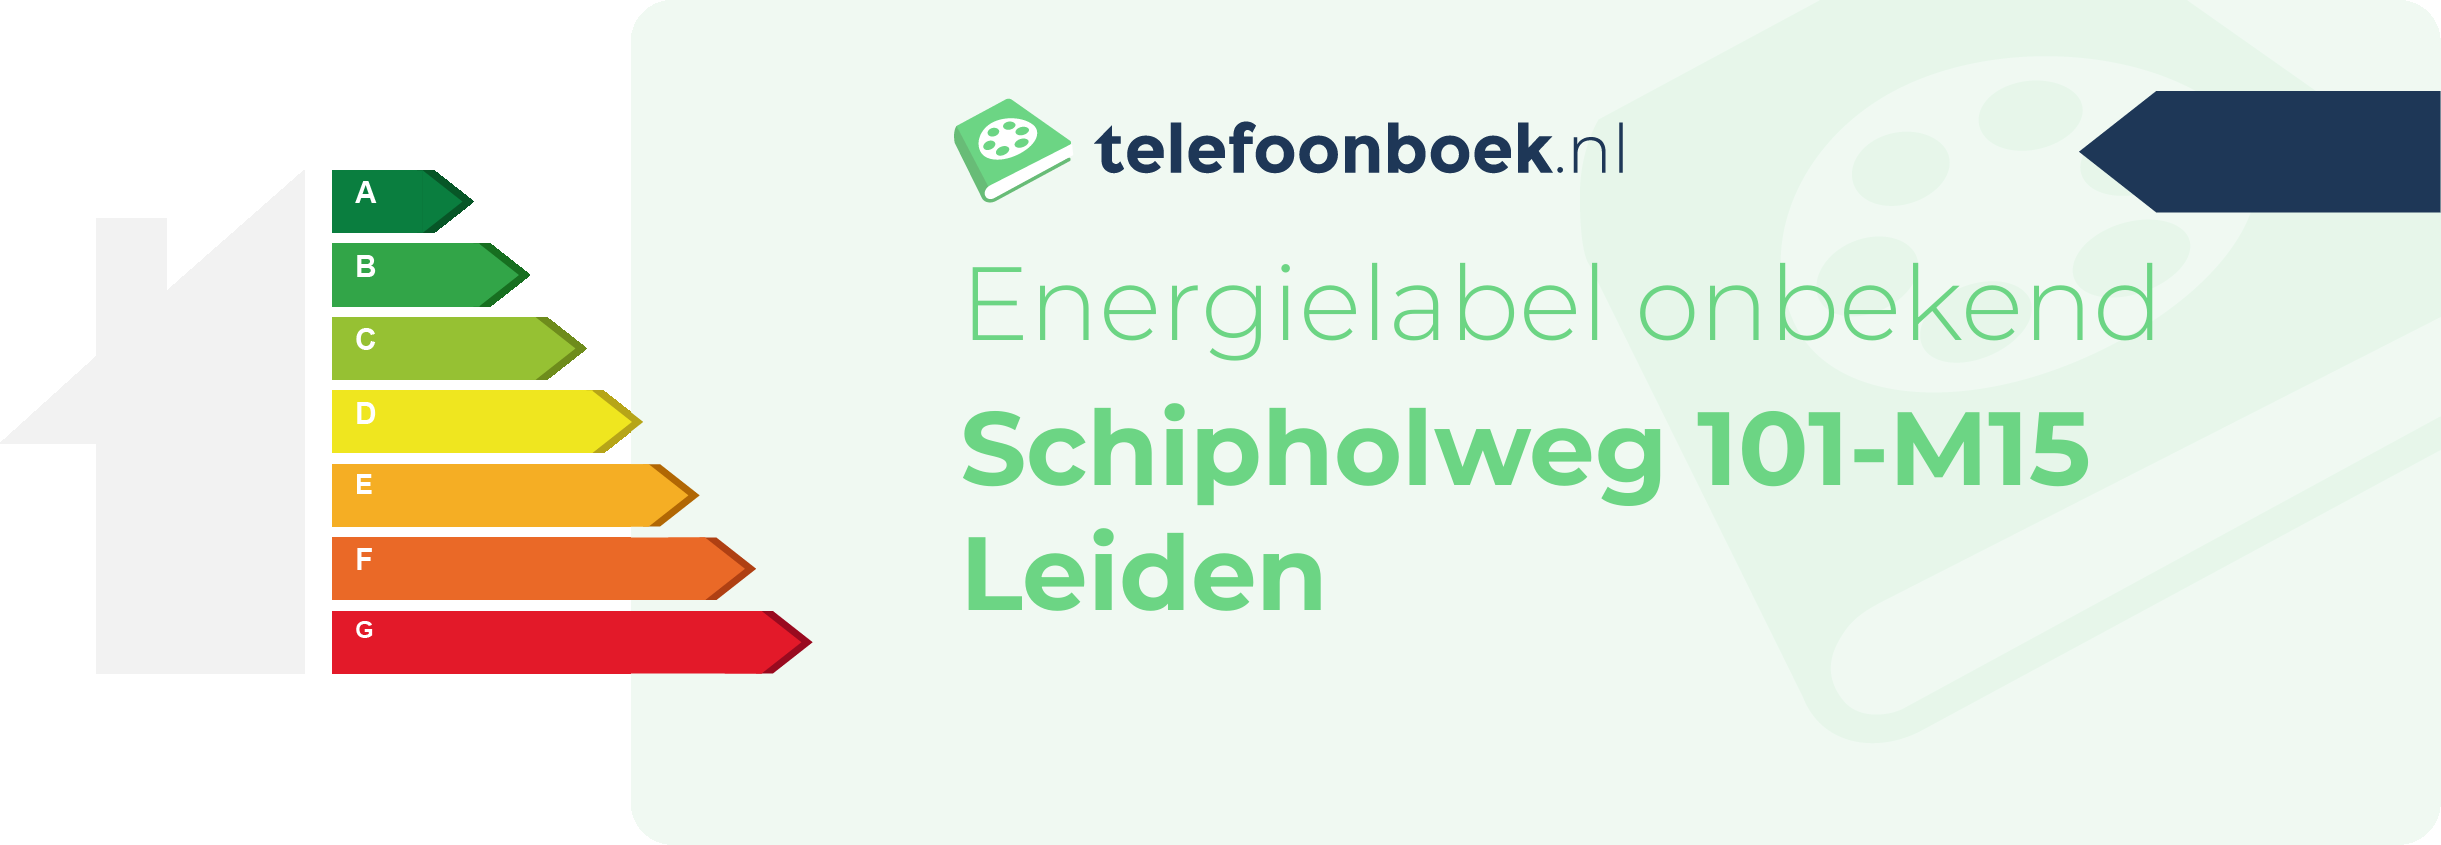 Energielabel Schipholweg 101-M15 Leiden